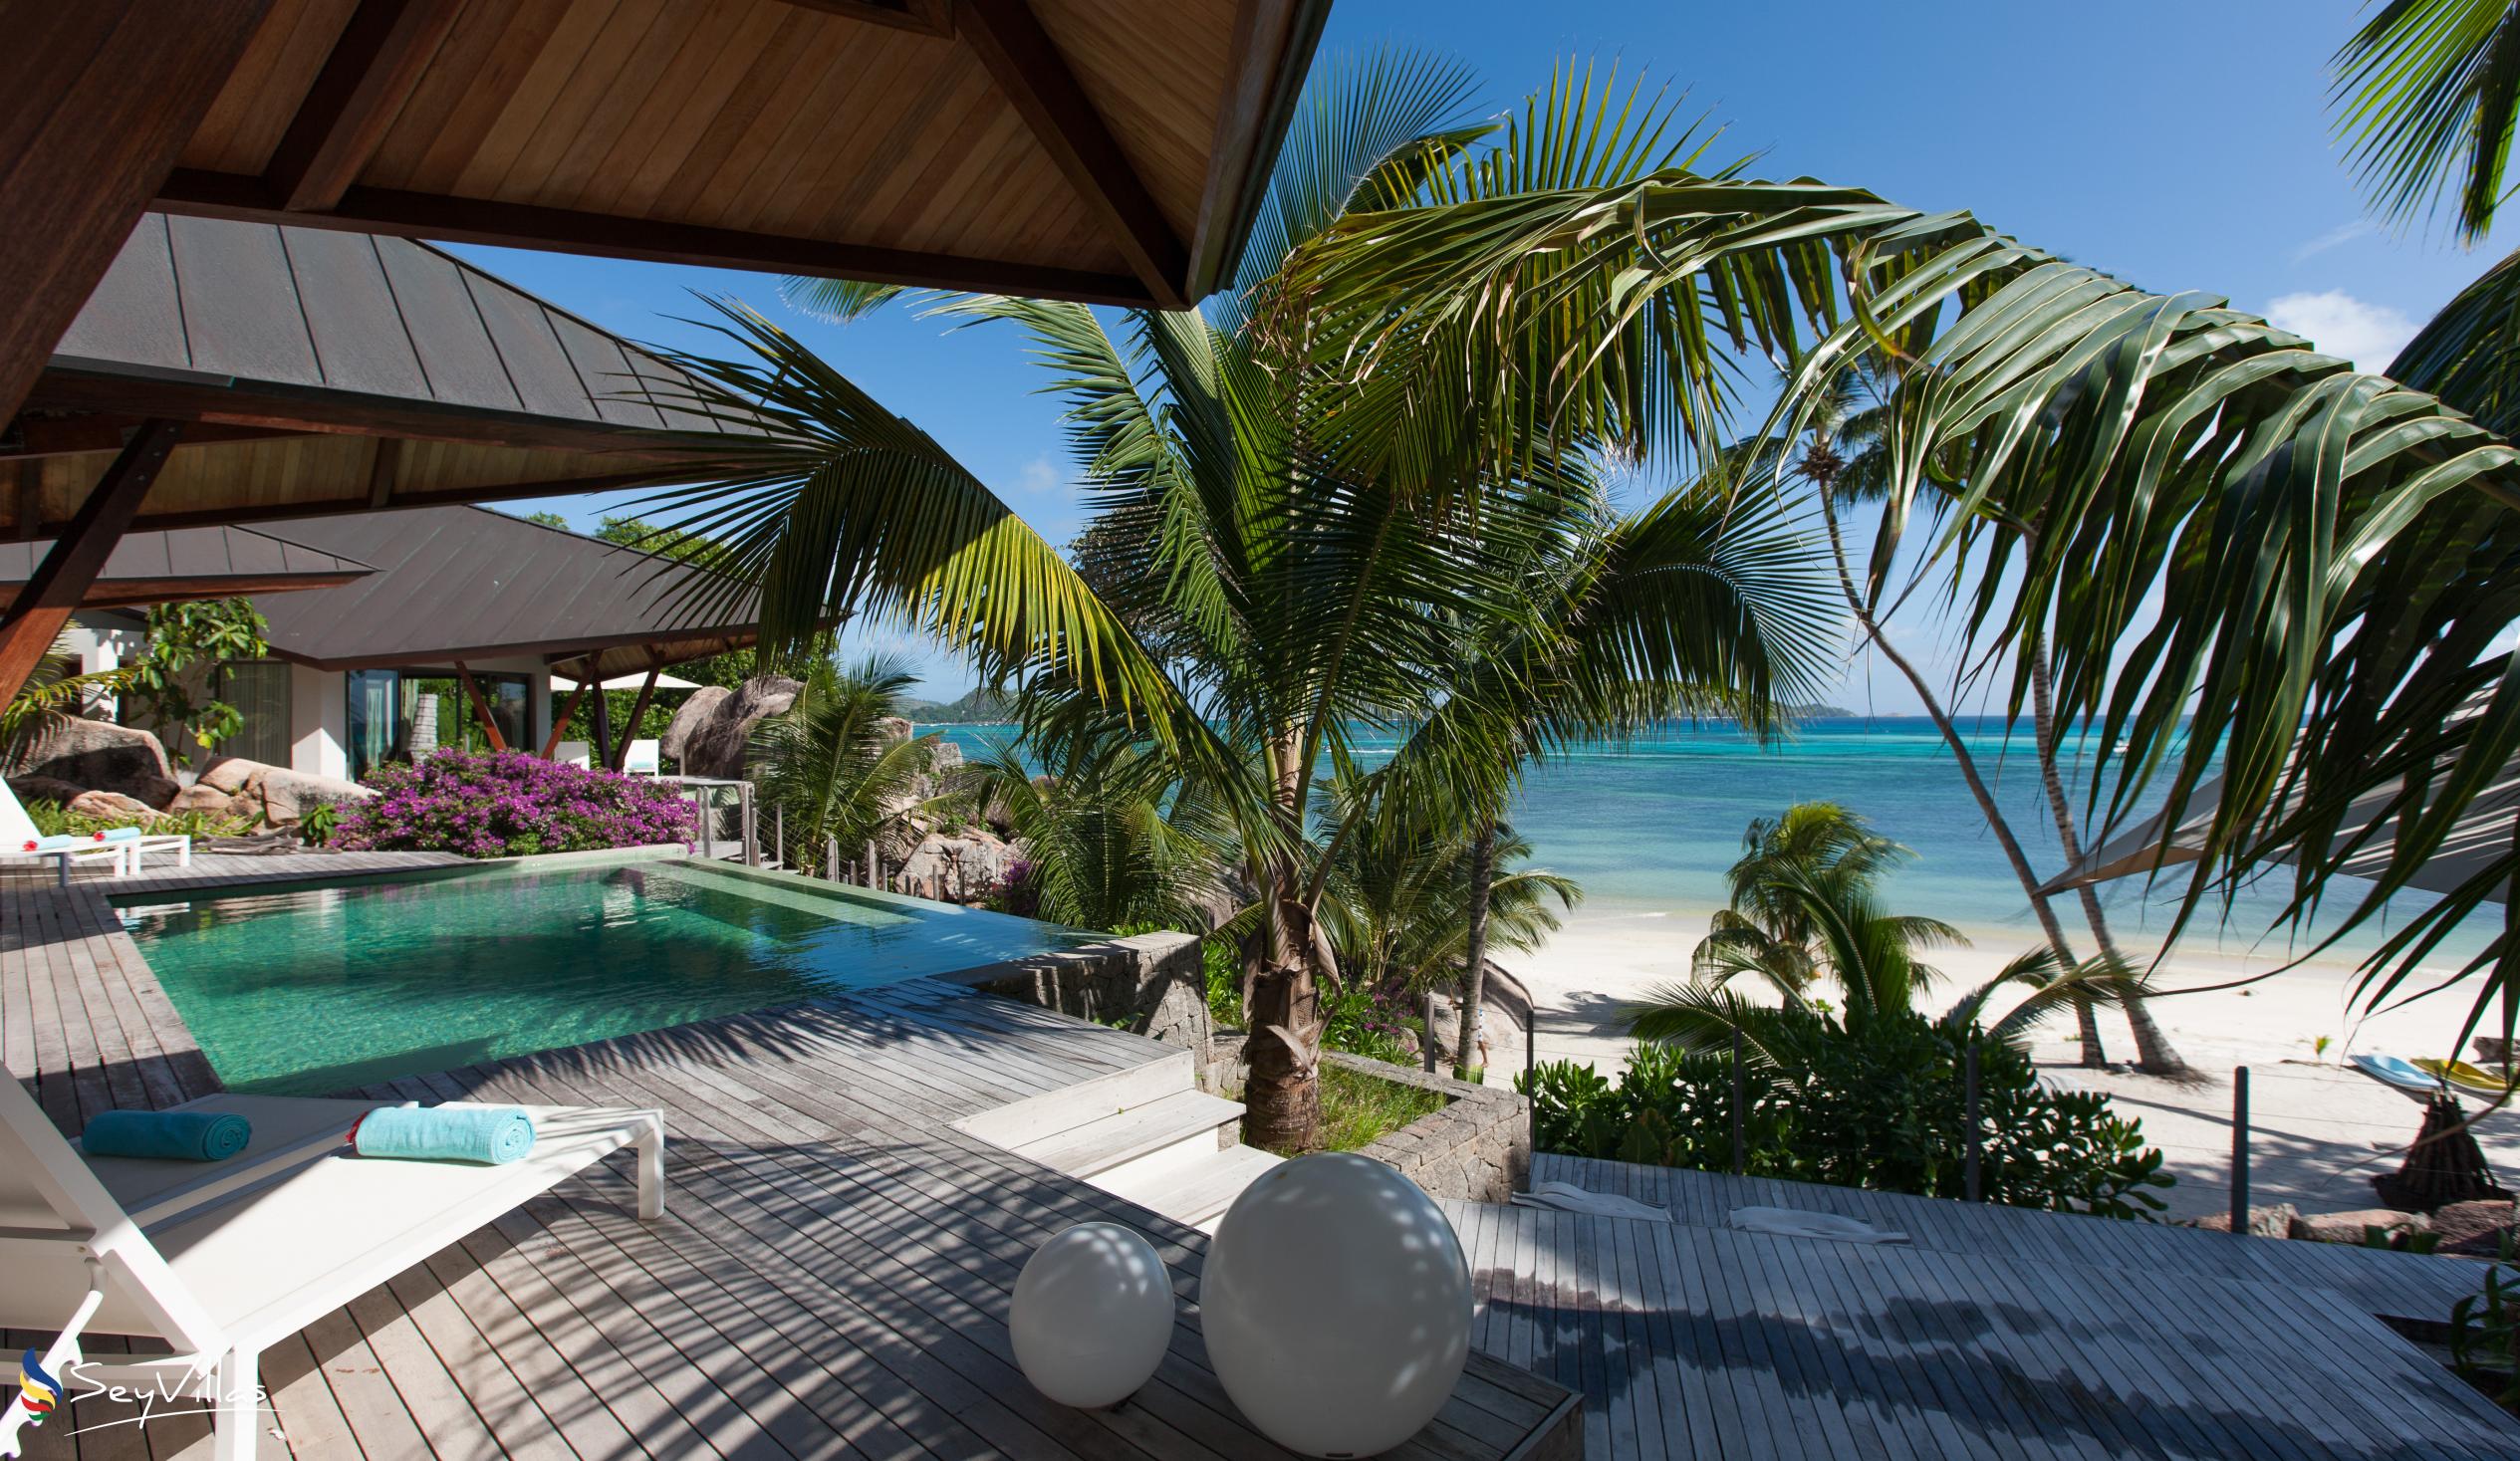 Foto 13: Villa Deckenia - Aussenbereich - Praslin (Seychellen)